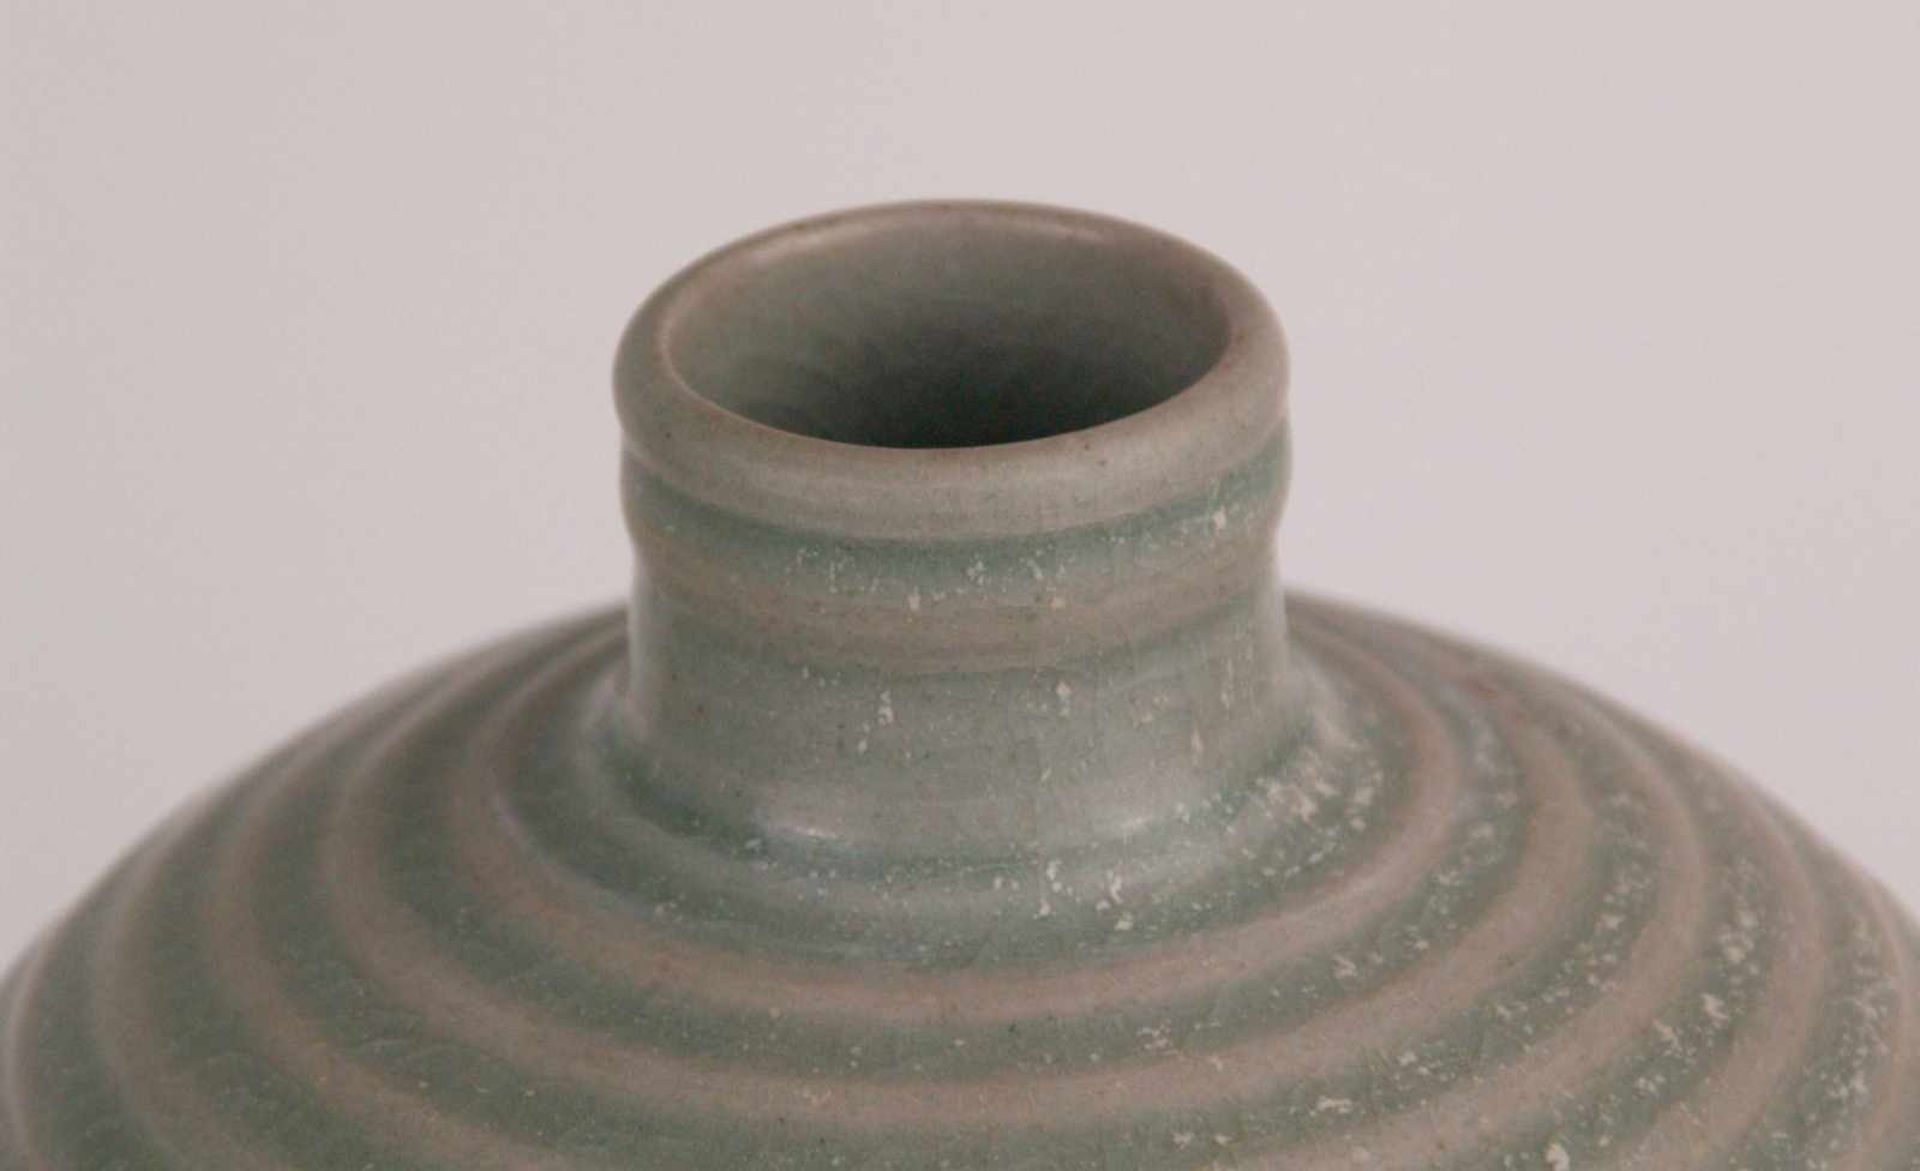 Meipingvase - China, Rillendekor mit Seladonglasur,Standring unglasiert,allseits leichtes Craquelé, - Bild 2 aus 4